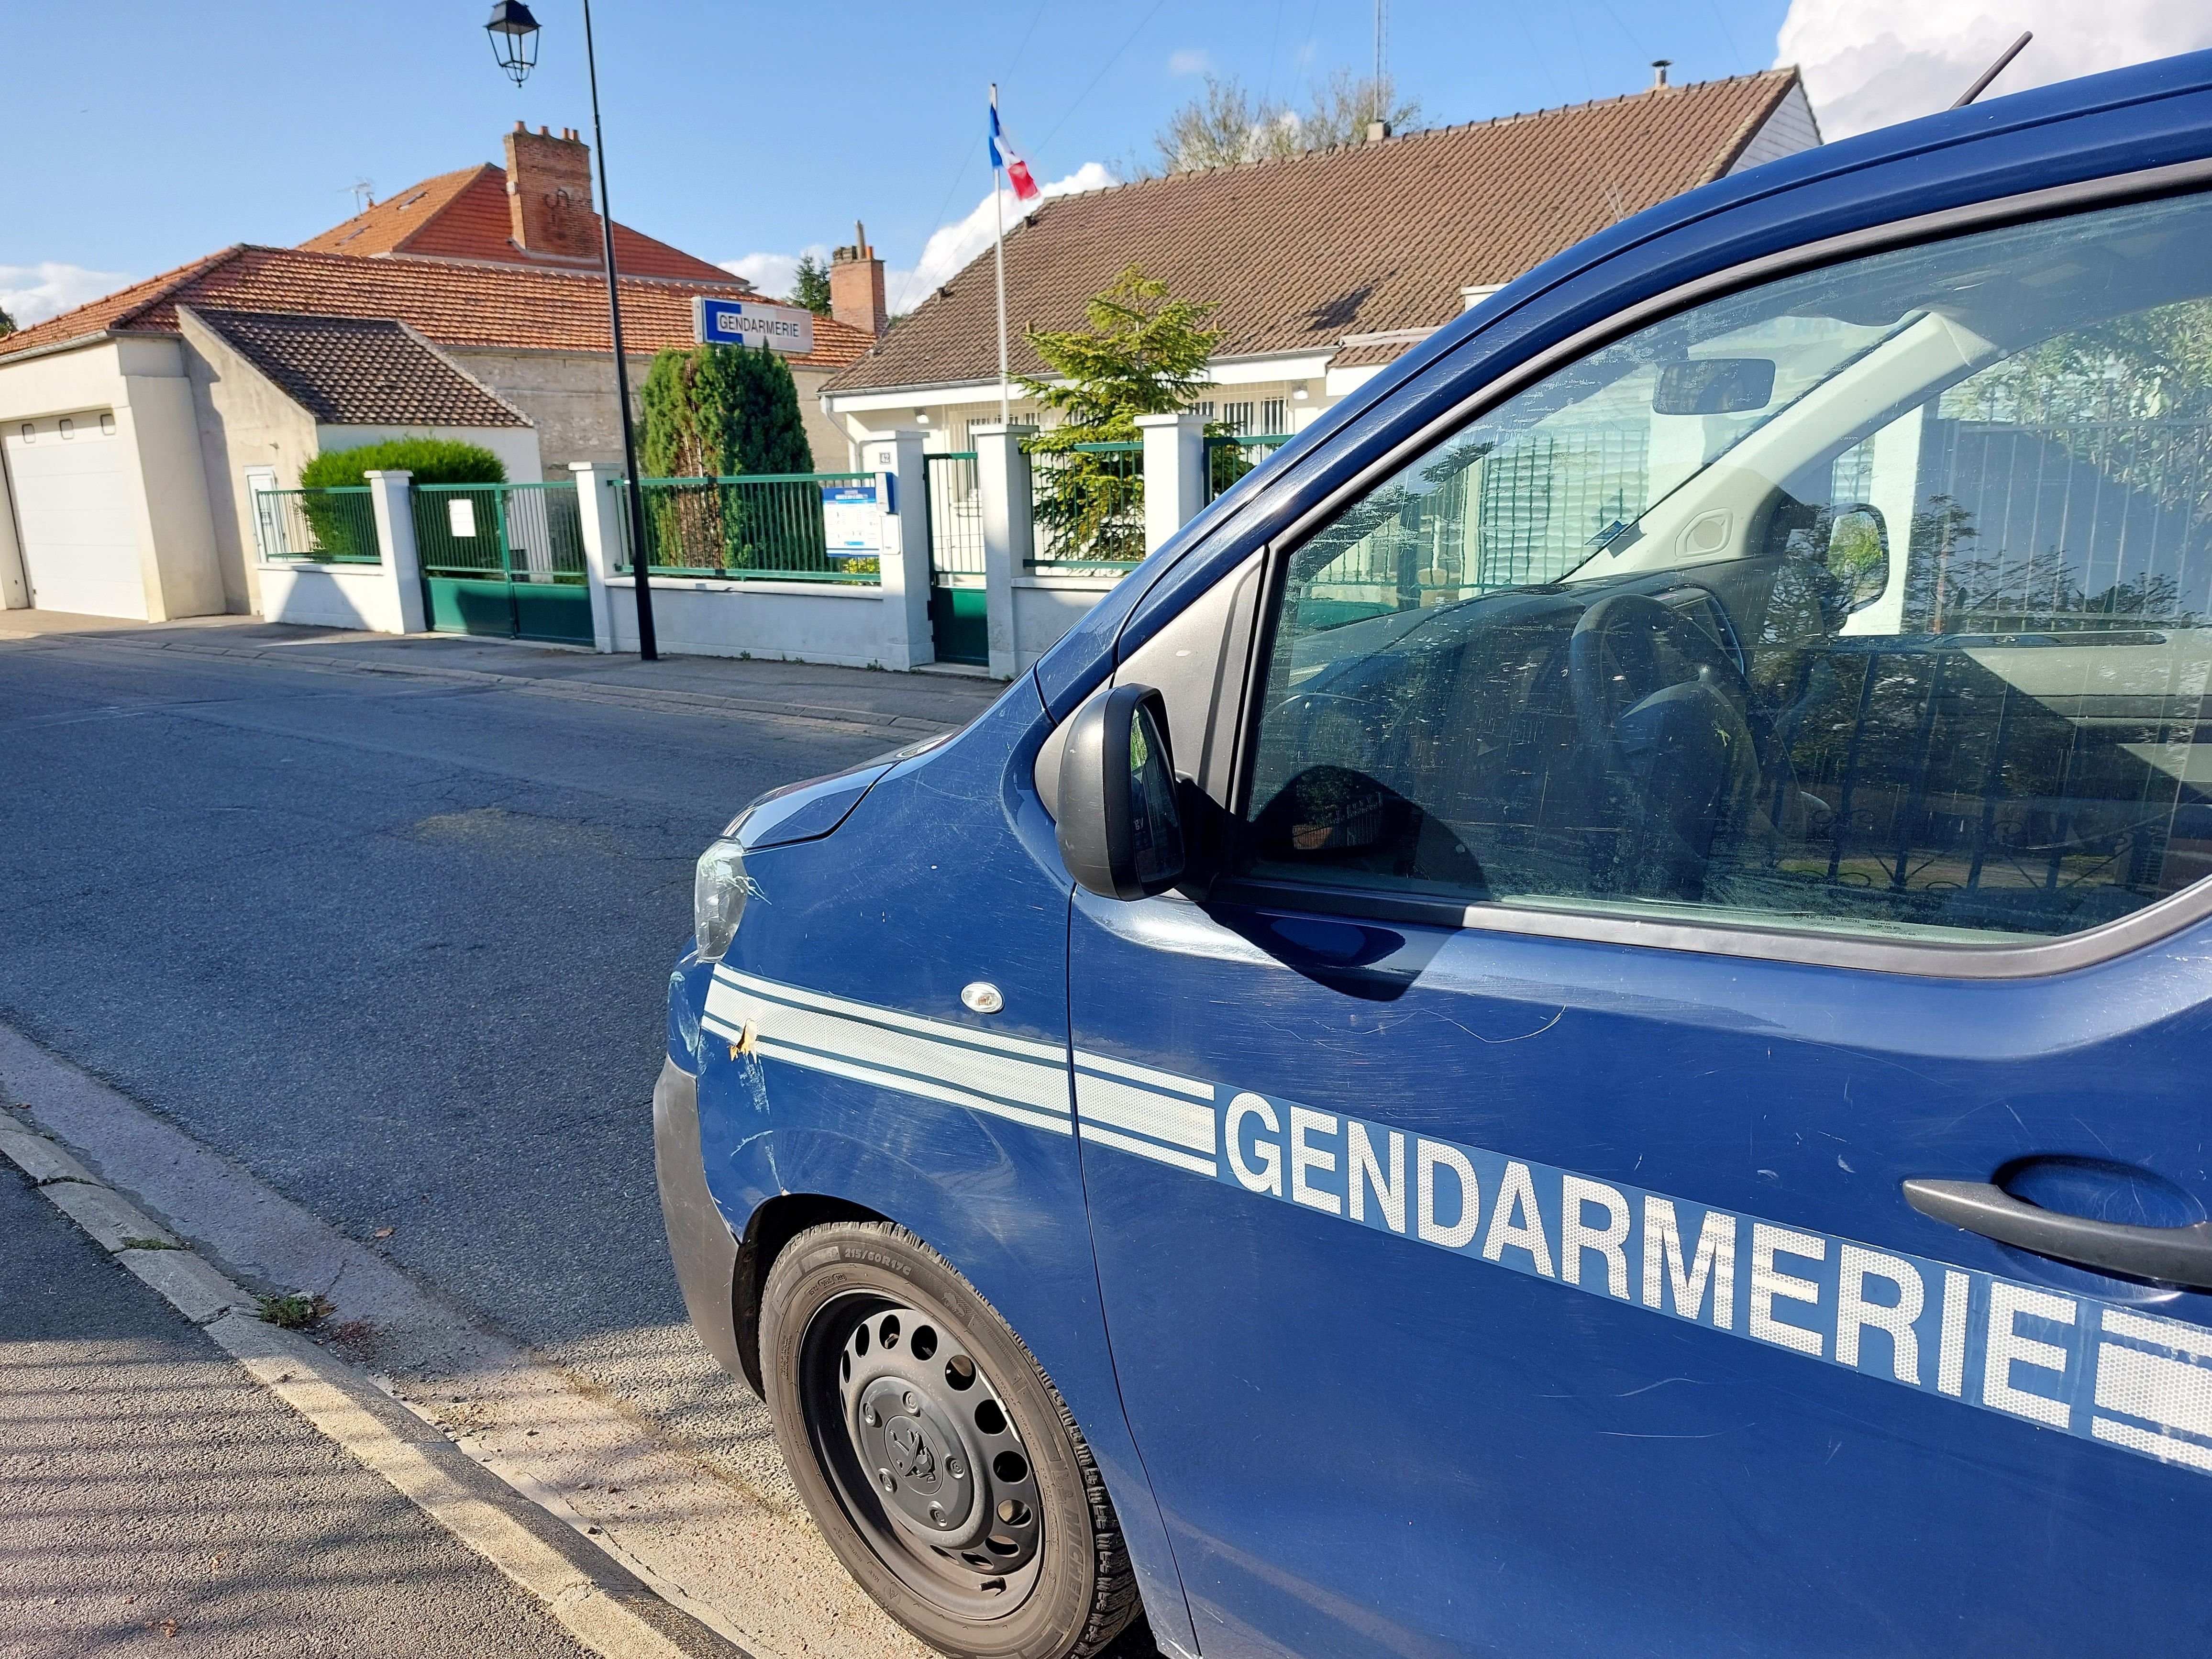 L'une des deux brigades mobiles de gendarmerie sera basée à Beton-Bazoches, commune de 950 habitants traversée par la Nationale 4. LP/Sébastien Blondé